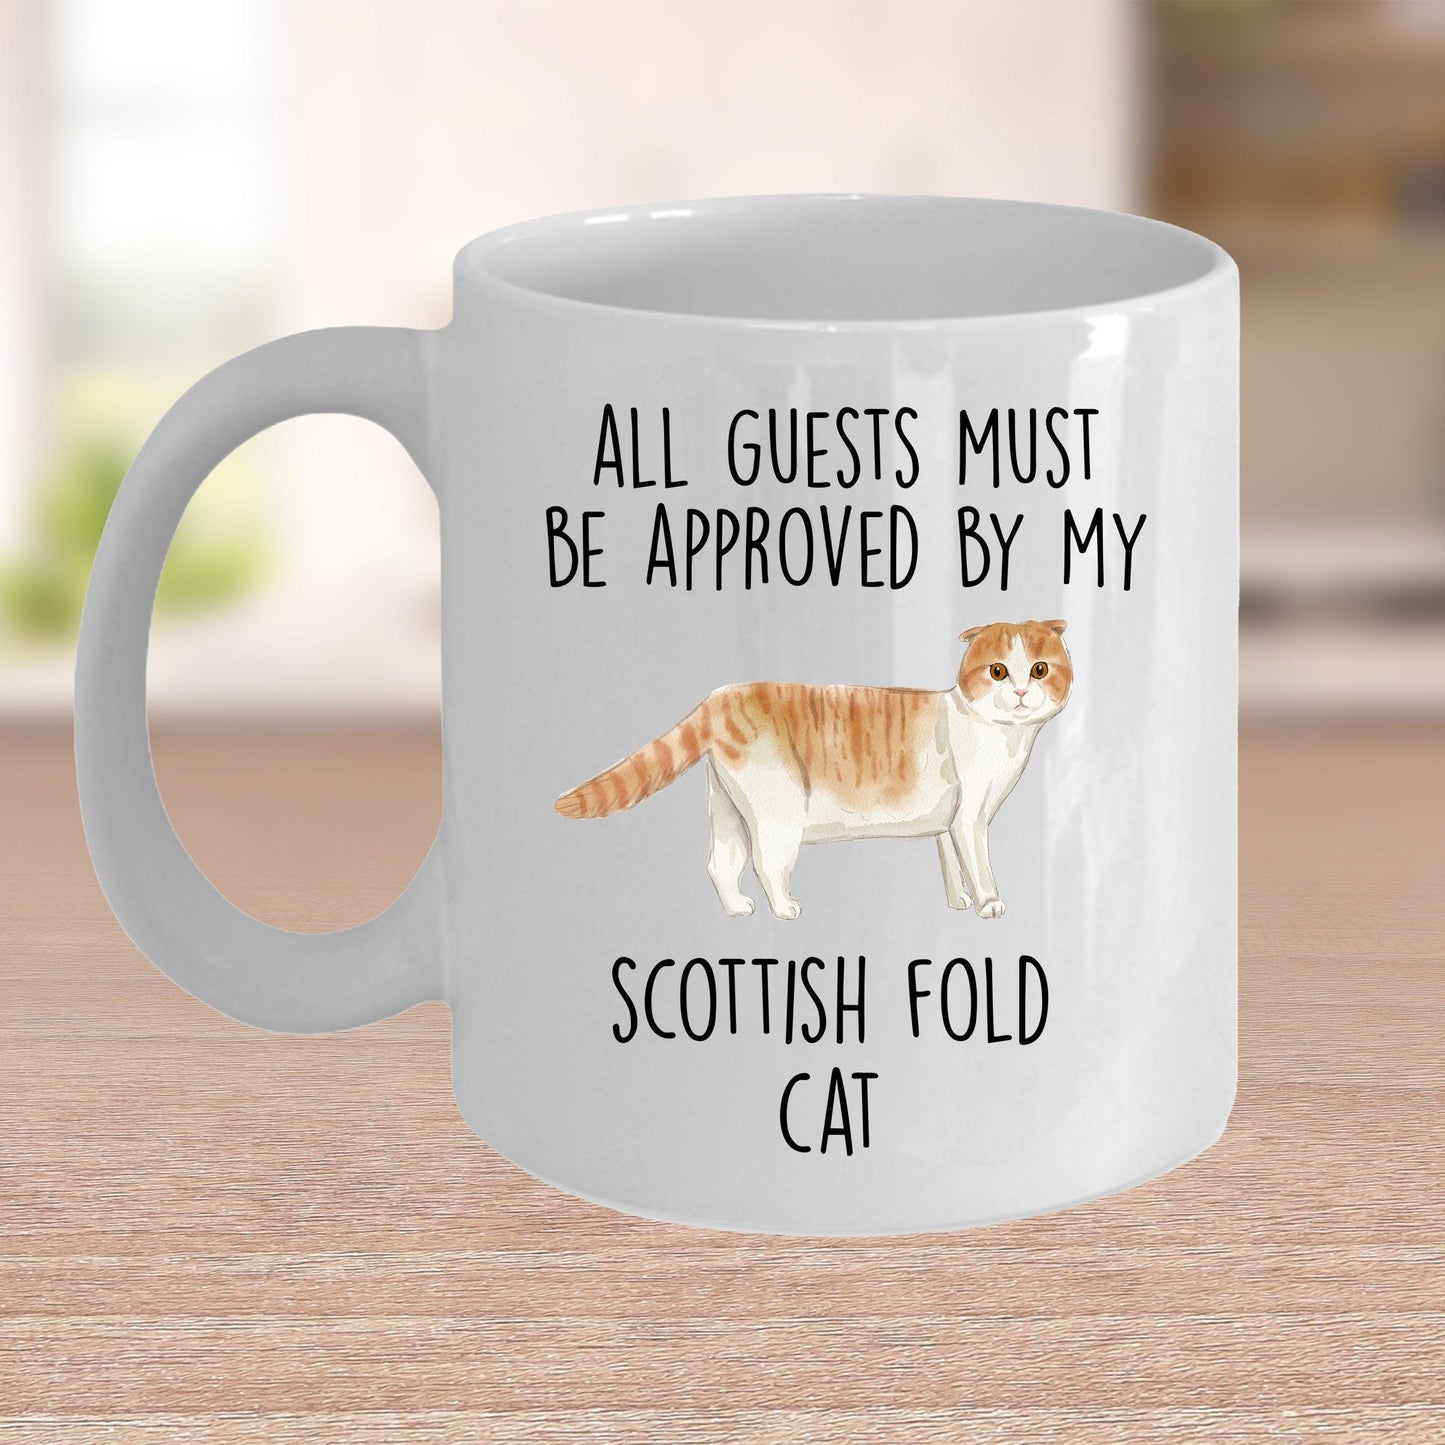 Scottish Fold Cat Funny Coffee Mug